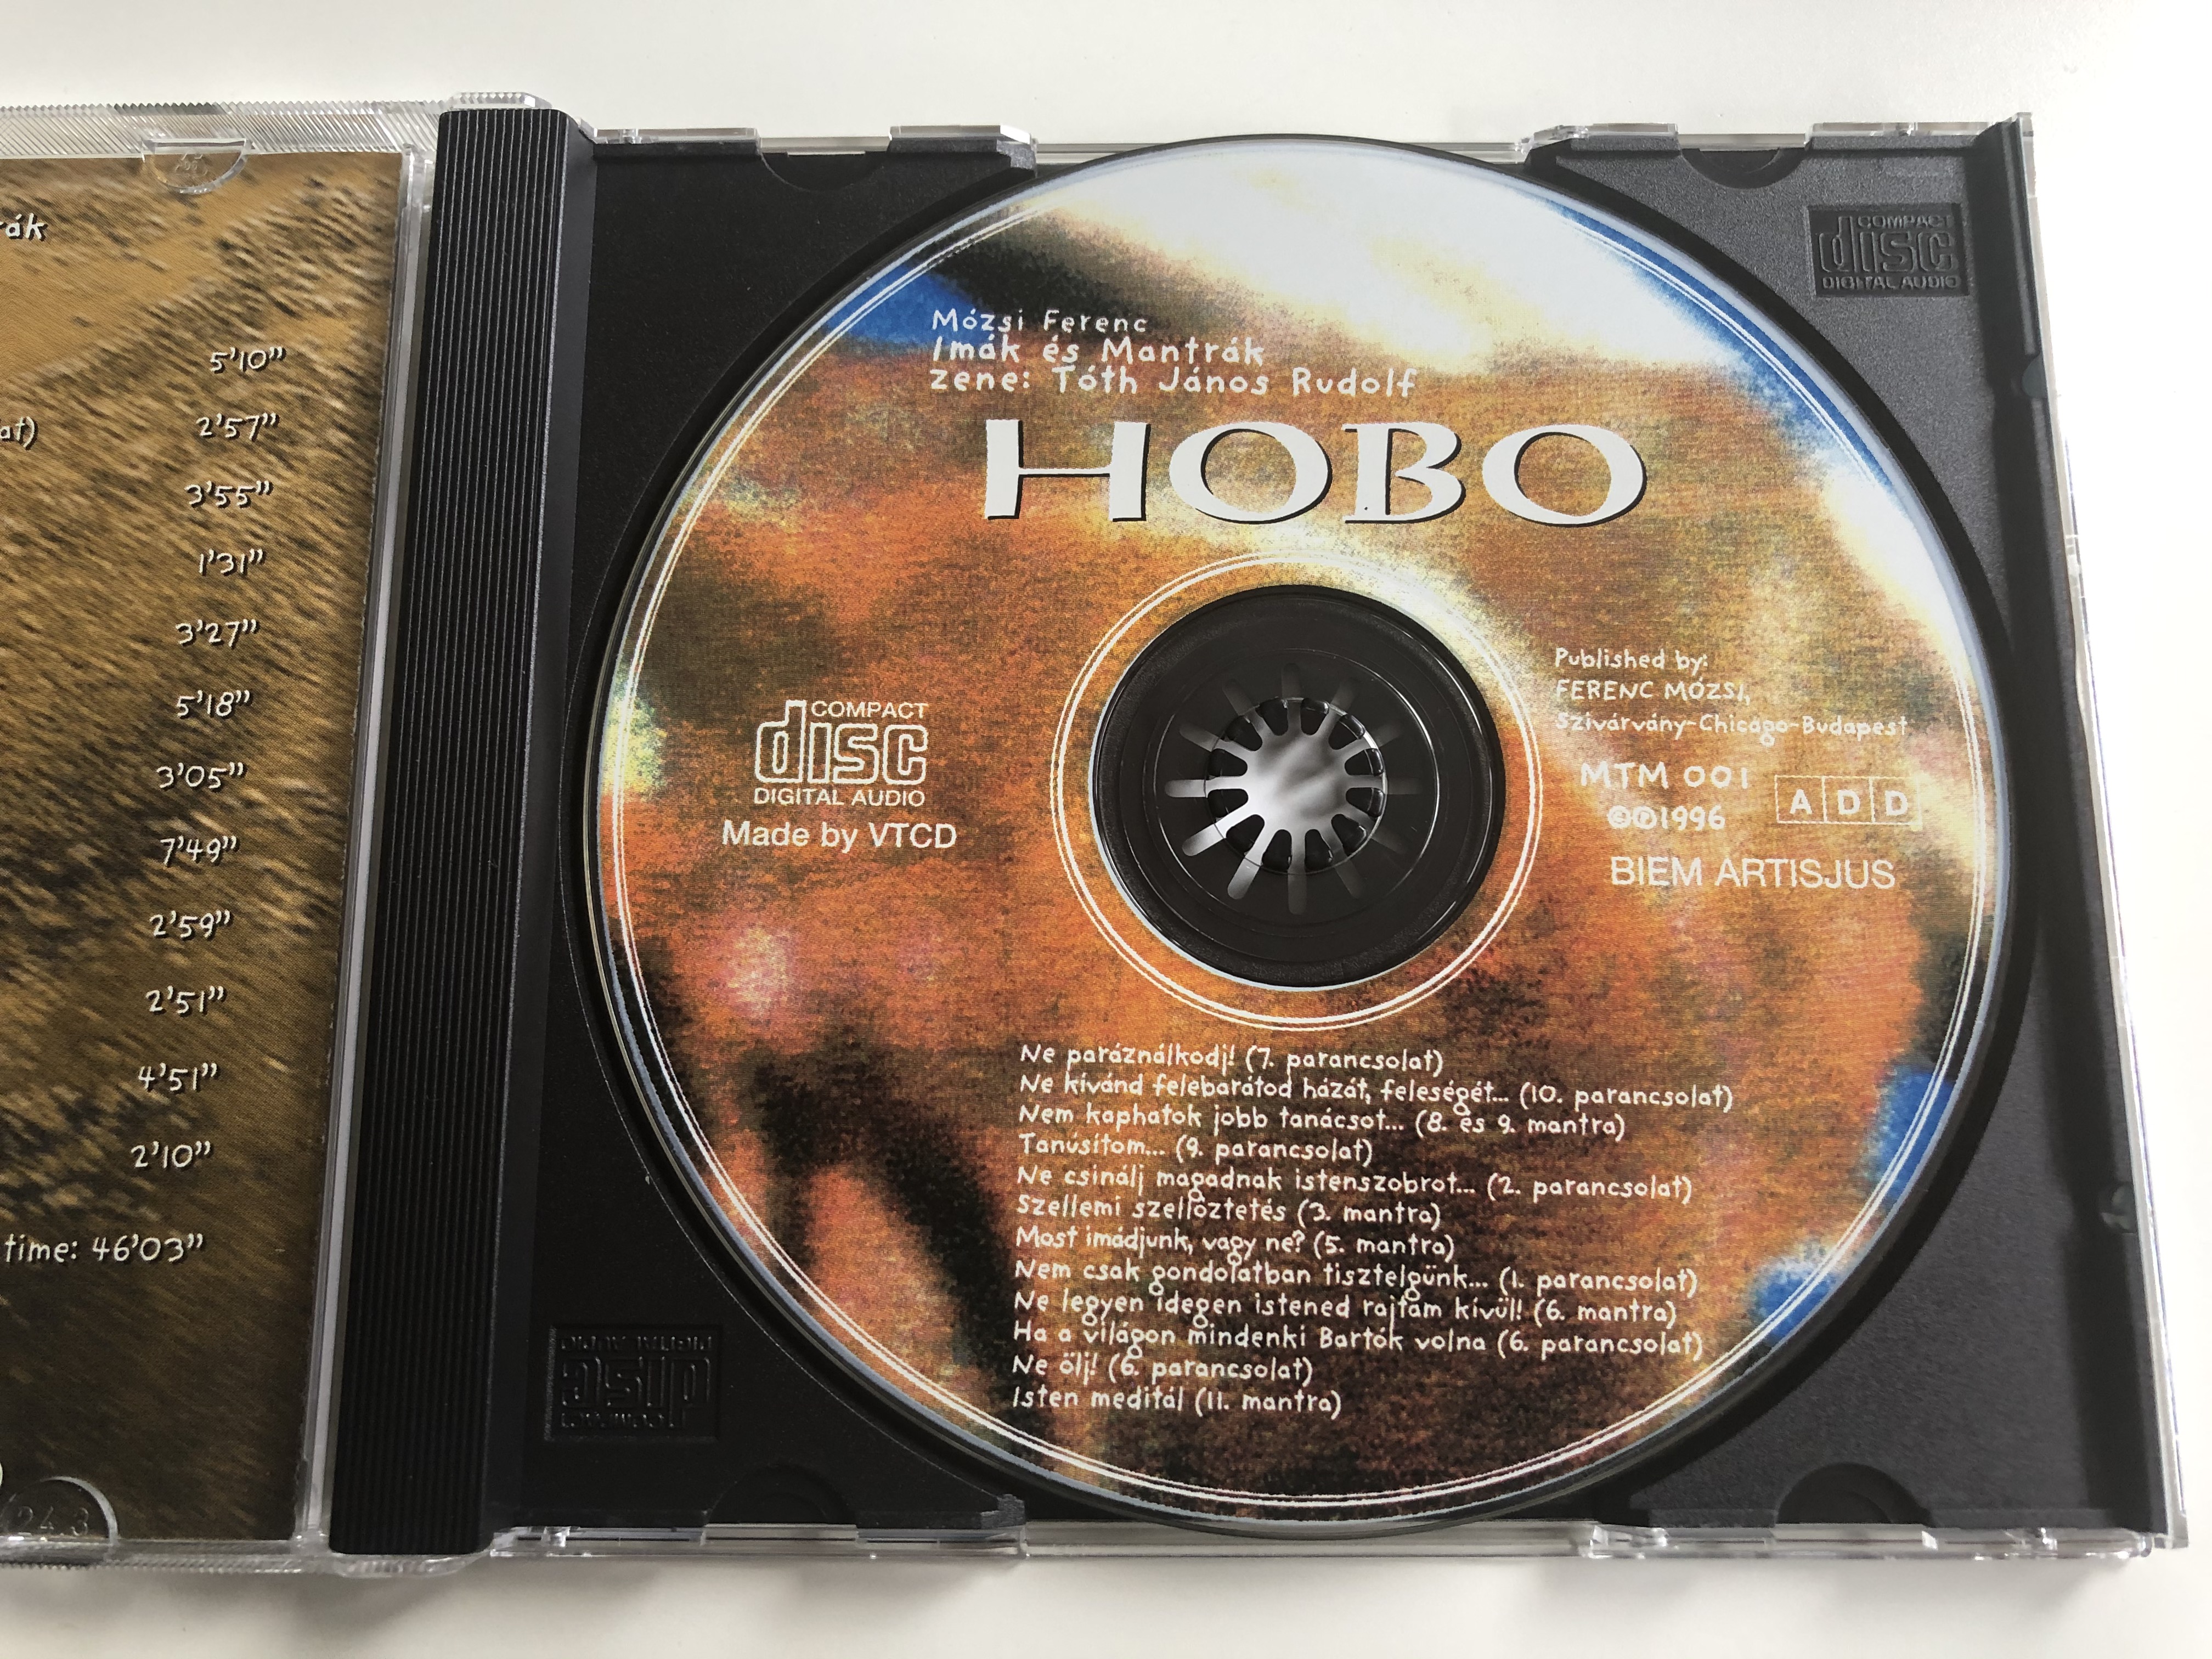 mozsi-ferenc-im-k-s-mantr-k-zene-toth-janos-rudolf-hobo-mtm-audio-cd-1996-mtm001-4-.jpg